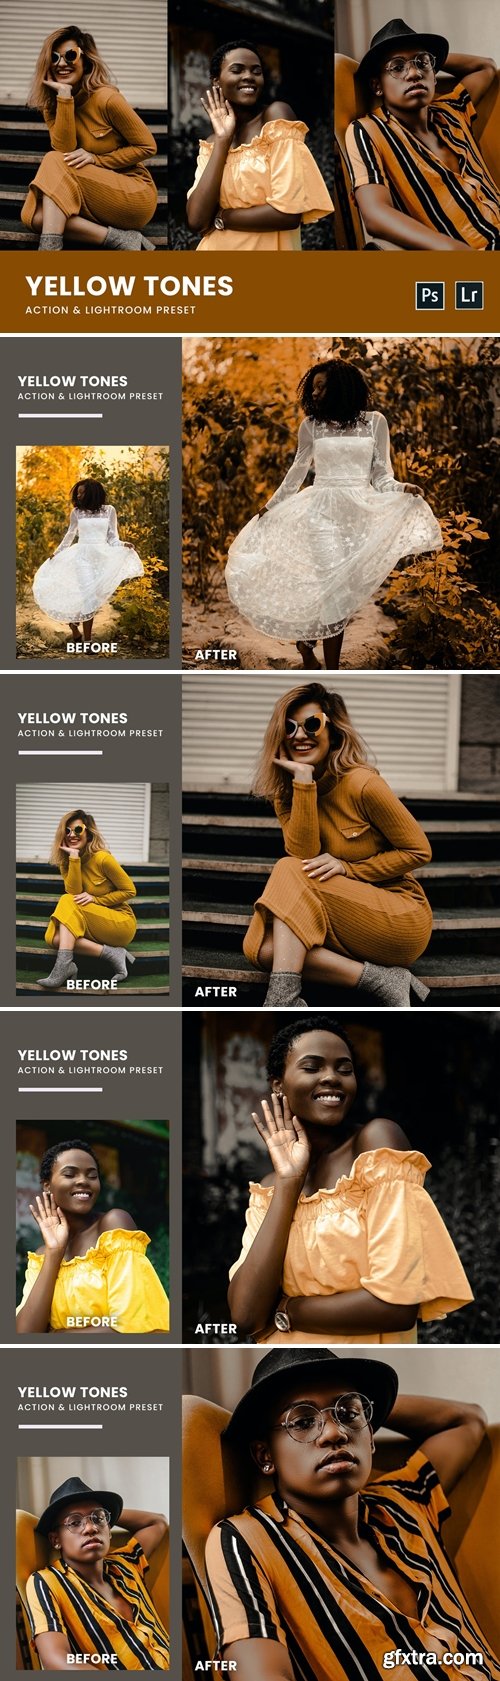 Yellow Tones Photoshop Action & Lightrom Presets